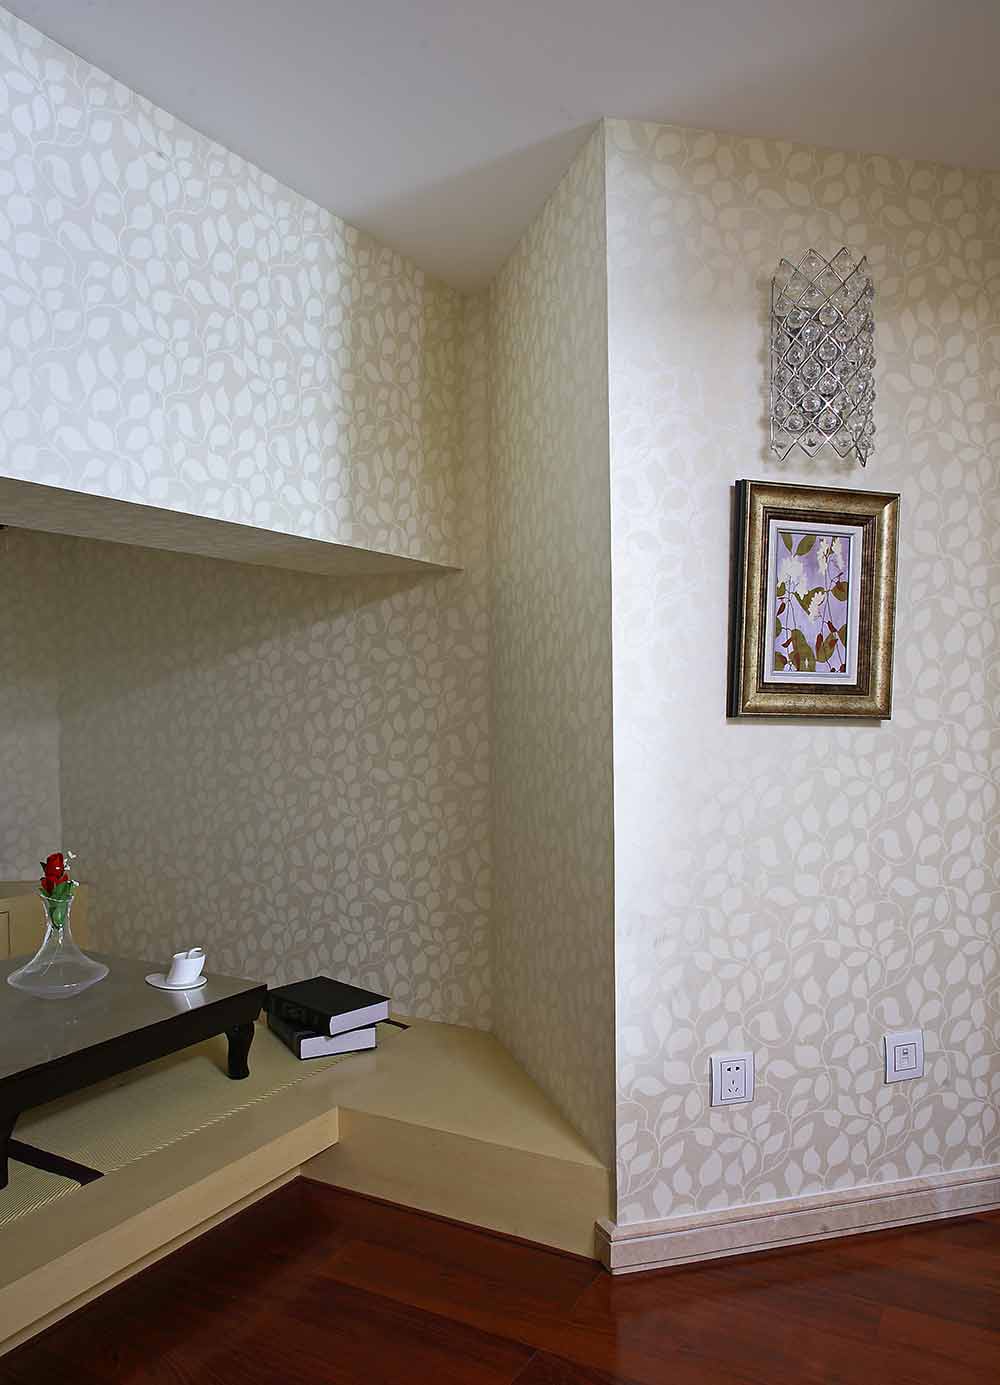 设计师利用楼梯拐角的空间设计了一个休闲区域，与其他空间不同，白色花纹墙纸的运用，让空间都安静下来。